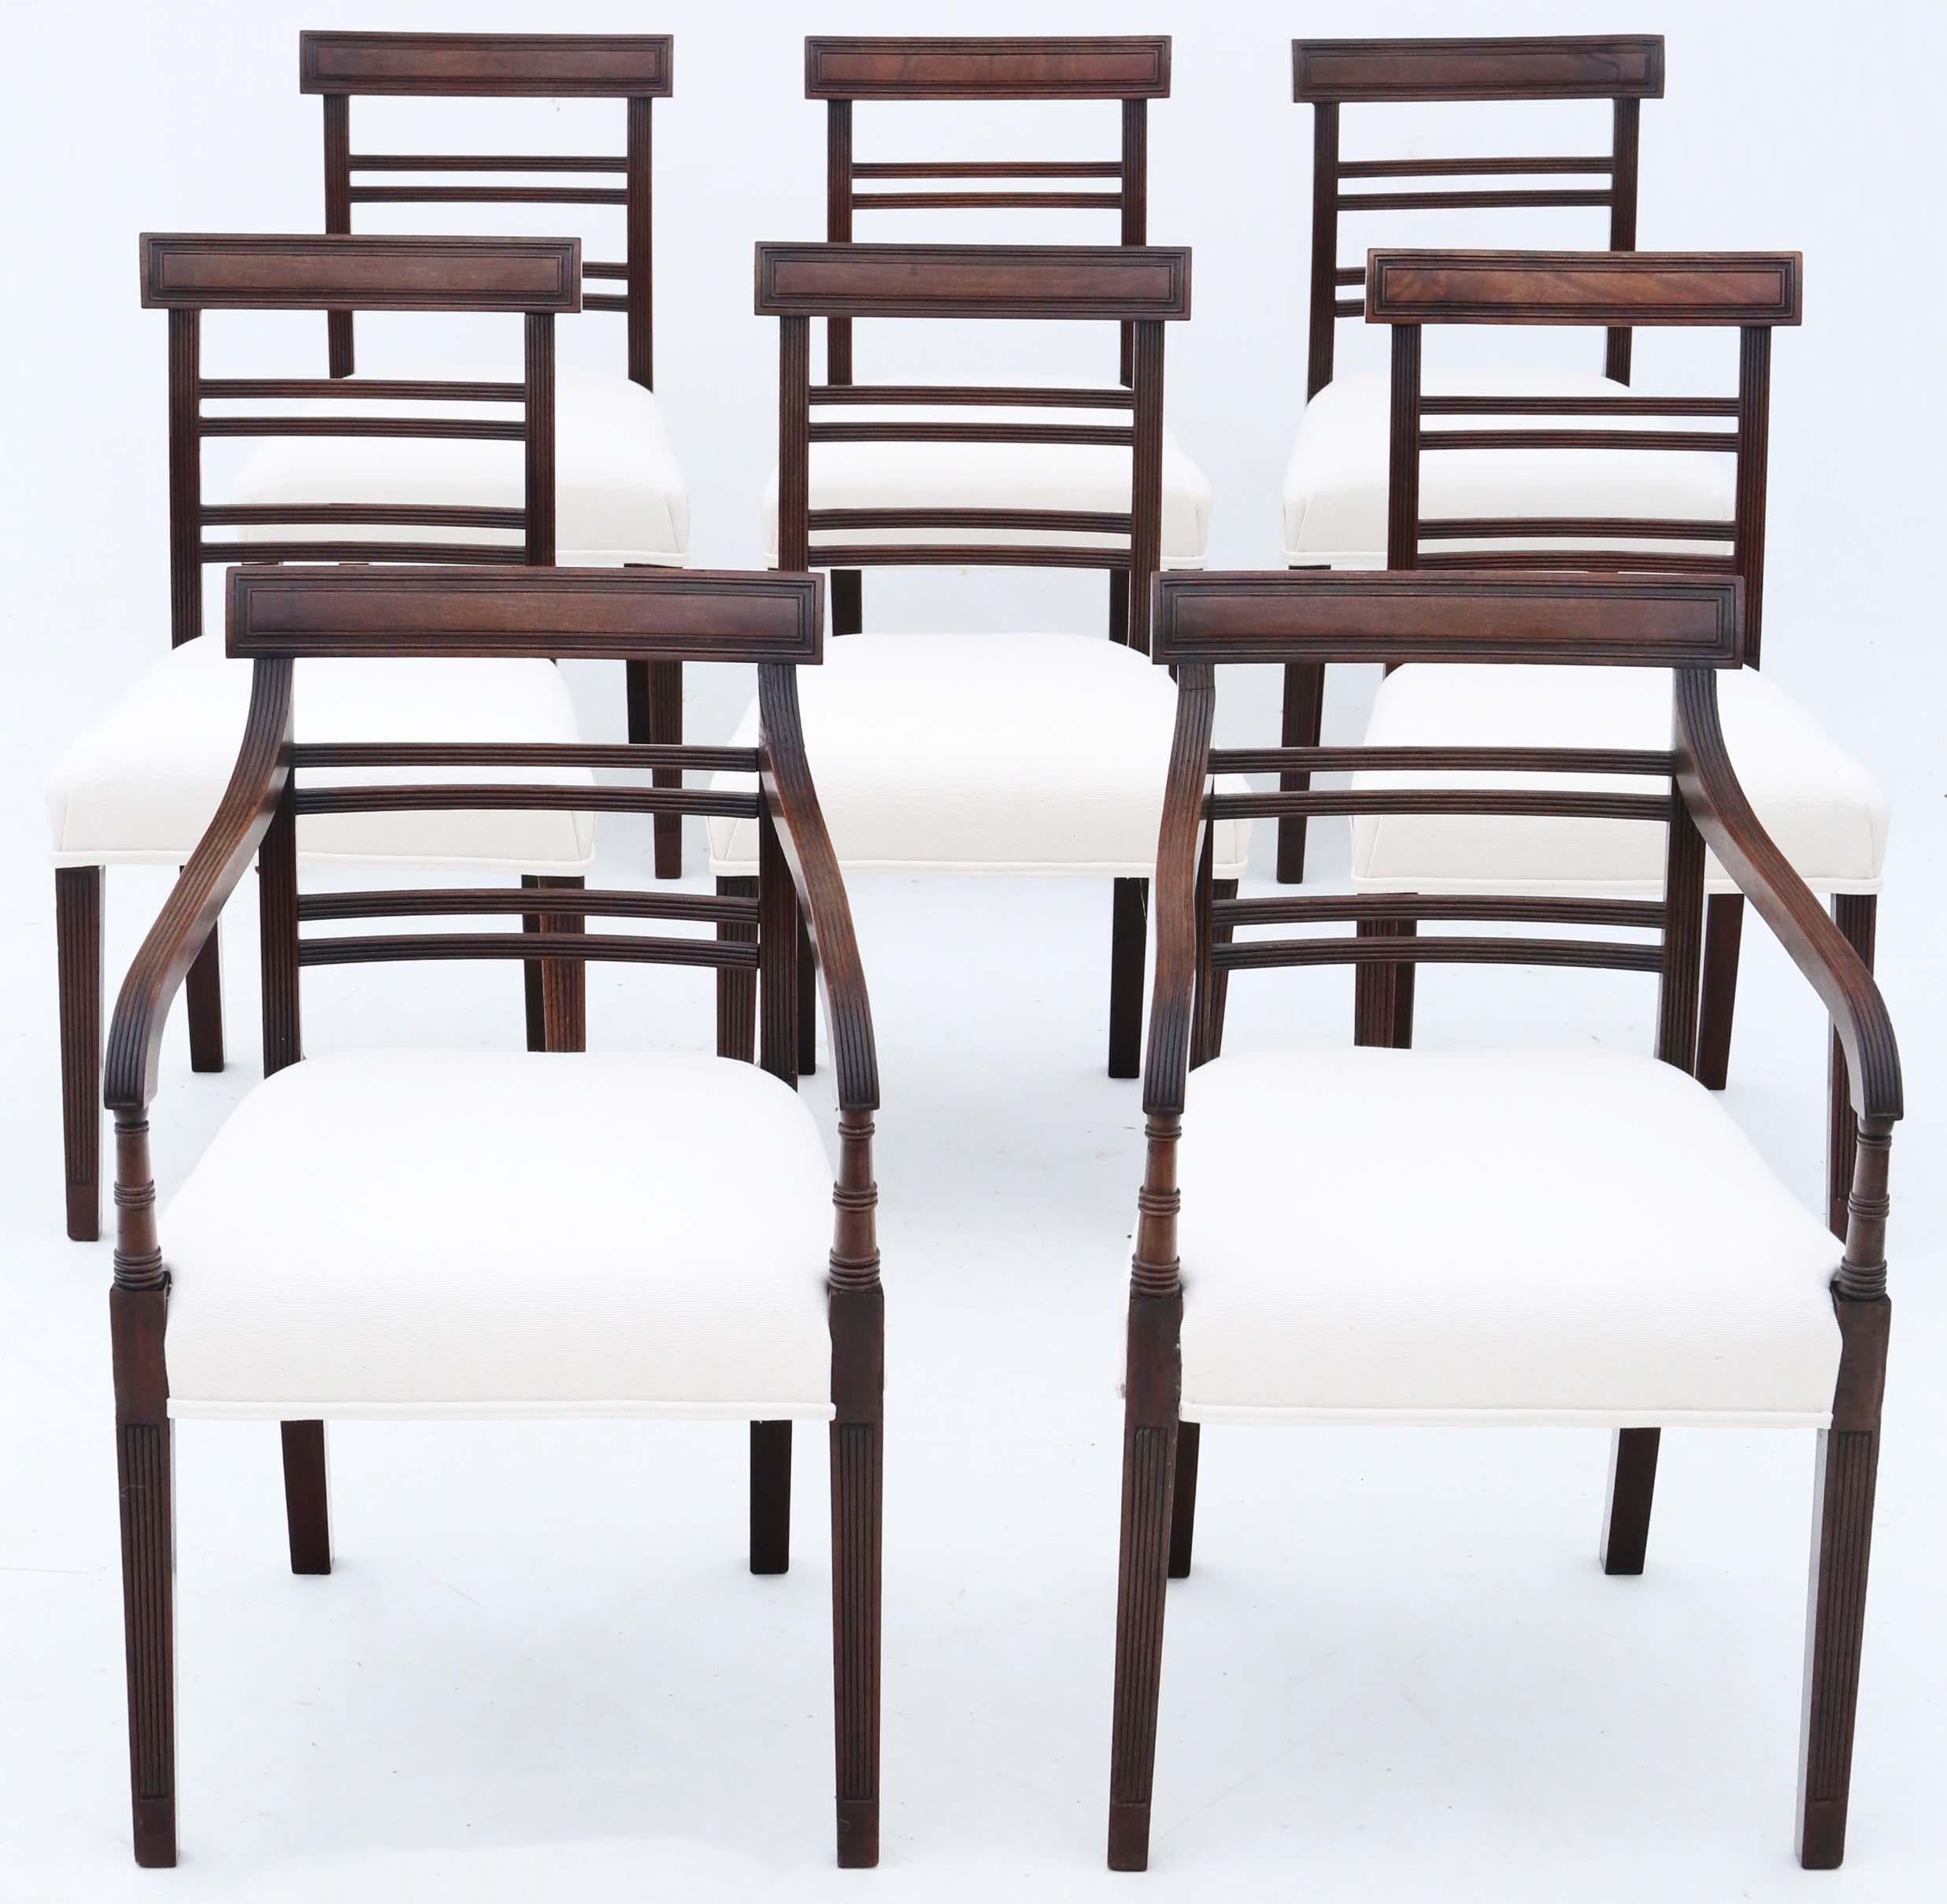 Begeben Sie sich auf eine Reise in die Vergangenheit mit diesem außergewöhnlichen Satz von 8 (6 plus 2) Mahagoni-Esszimmerstühlen aus dem frühen 19. Jahrhundert, die aus der Zeit um 1810 stammen. Diese Stühle sind eine Rarität, denn ihr schlichtes,